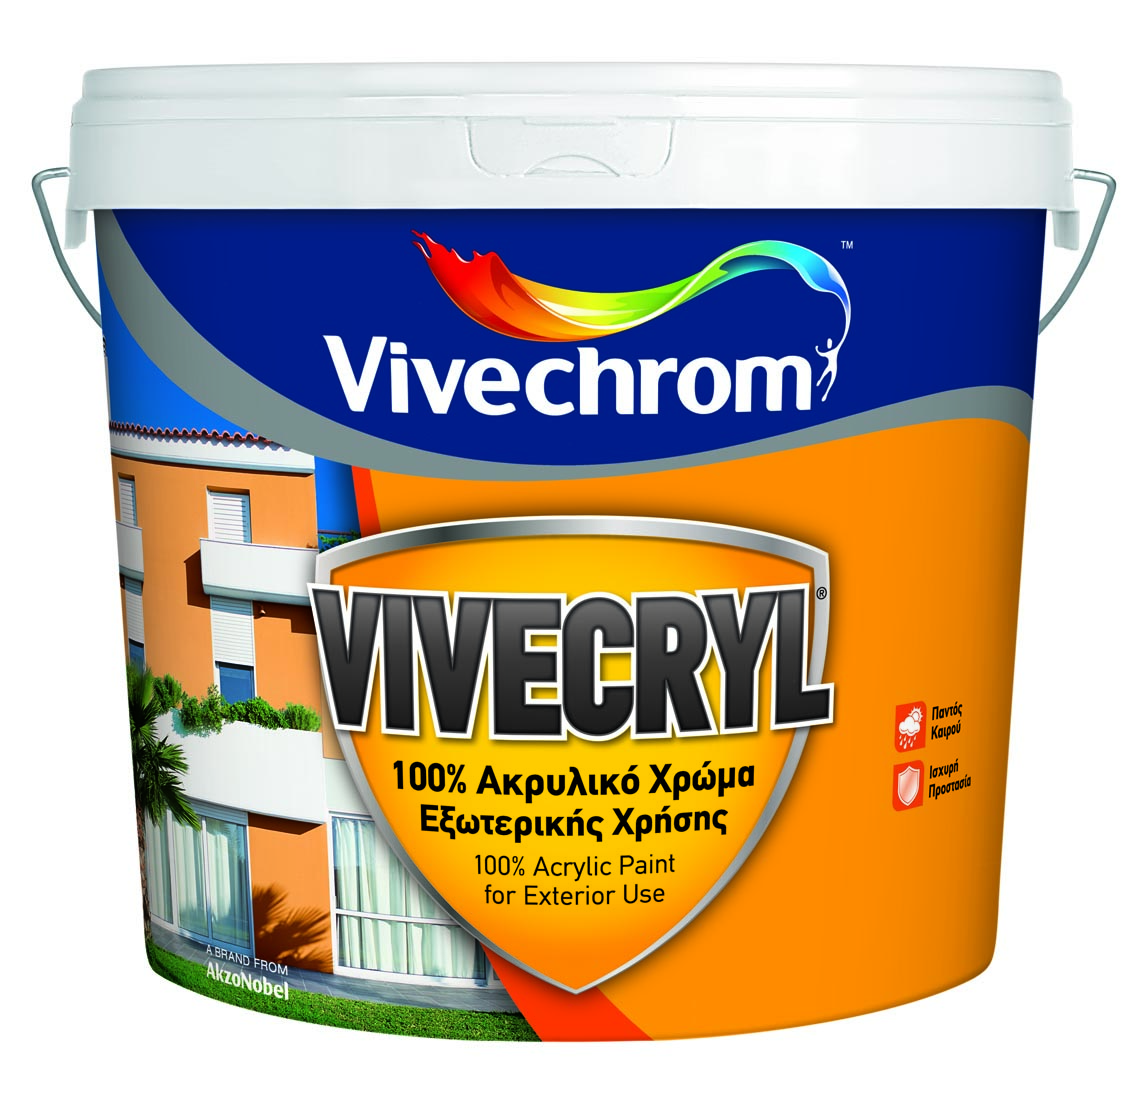 VIVECHROM WHITE VIVECRYL 30 750ML